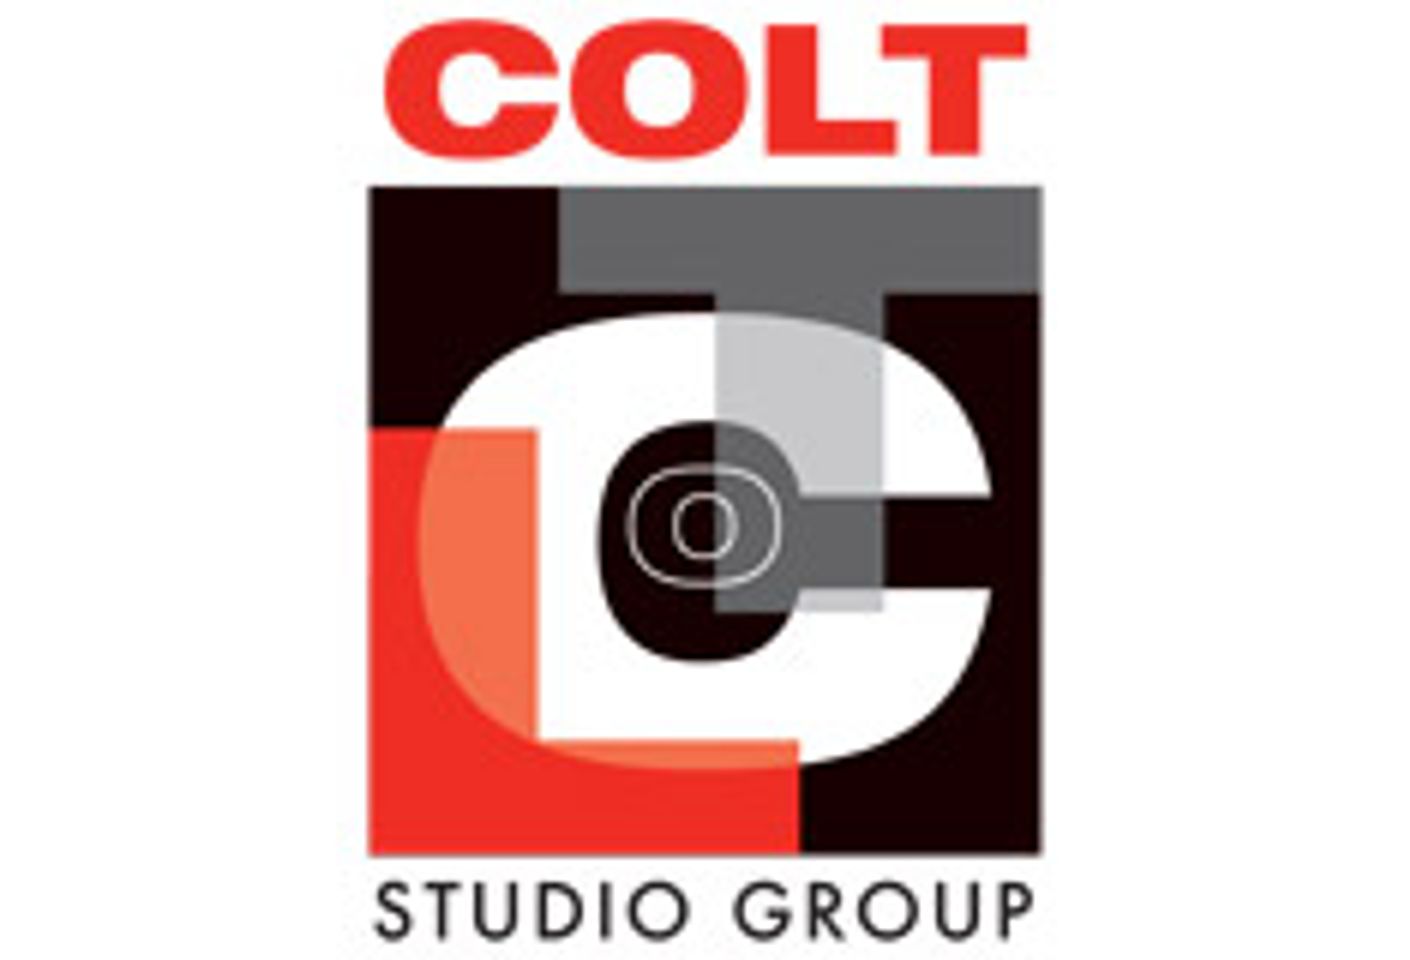 Company Profile: COLT Studio